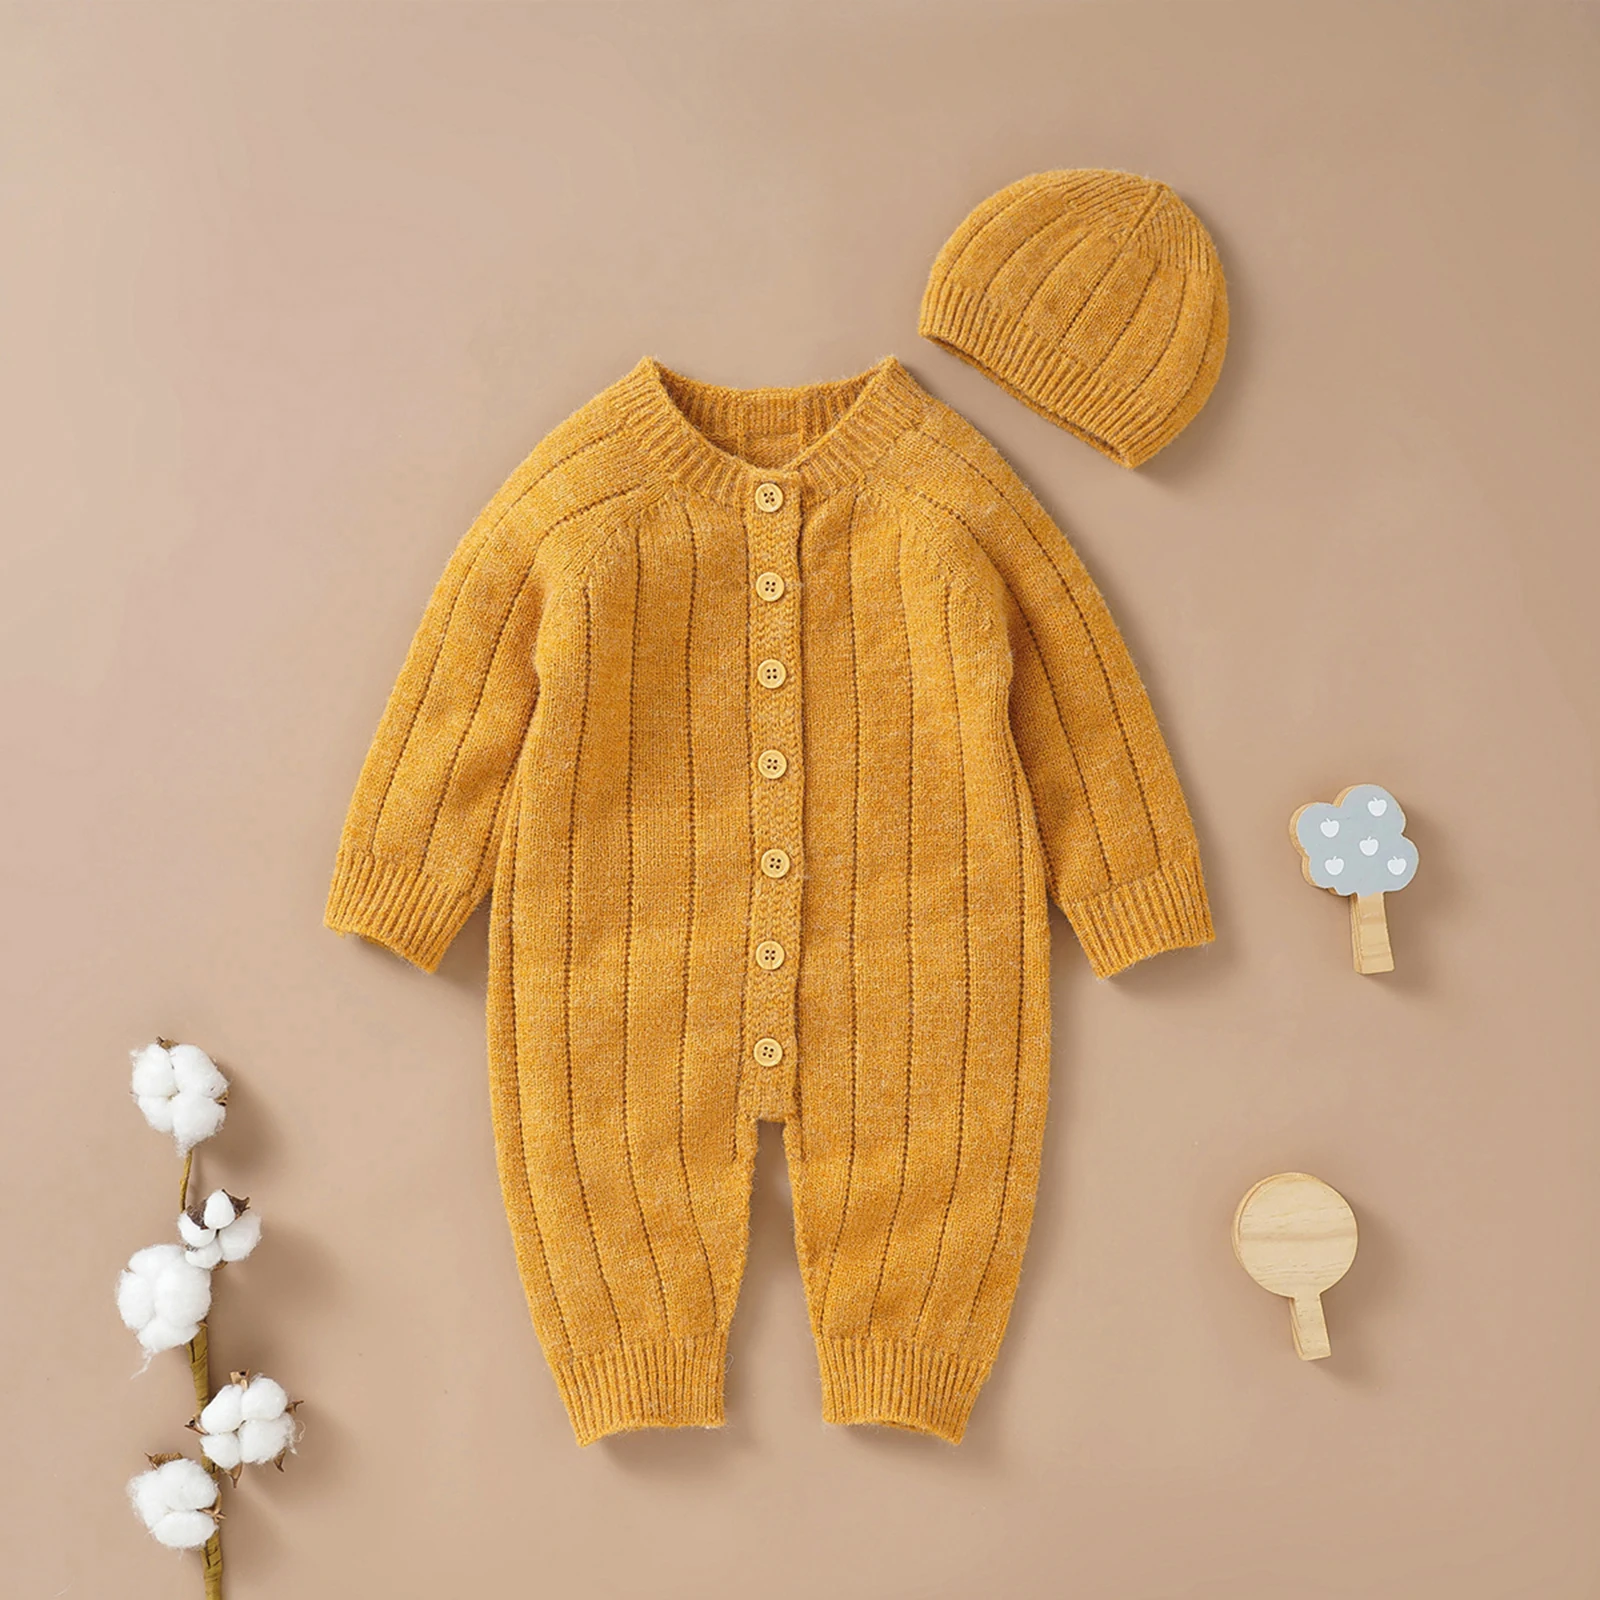 Pudcoco תינוק בייבי בנות בנים החורף סרבל וכובע, מוצק צבע השרוול הארוך אחת עם חזה סרוגים רומפר, 0-18 חודשים.4